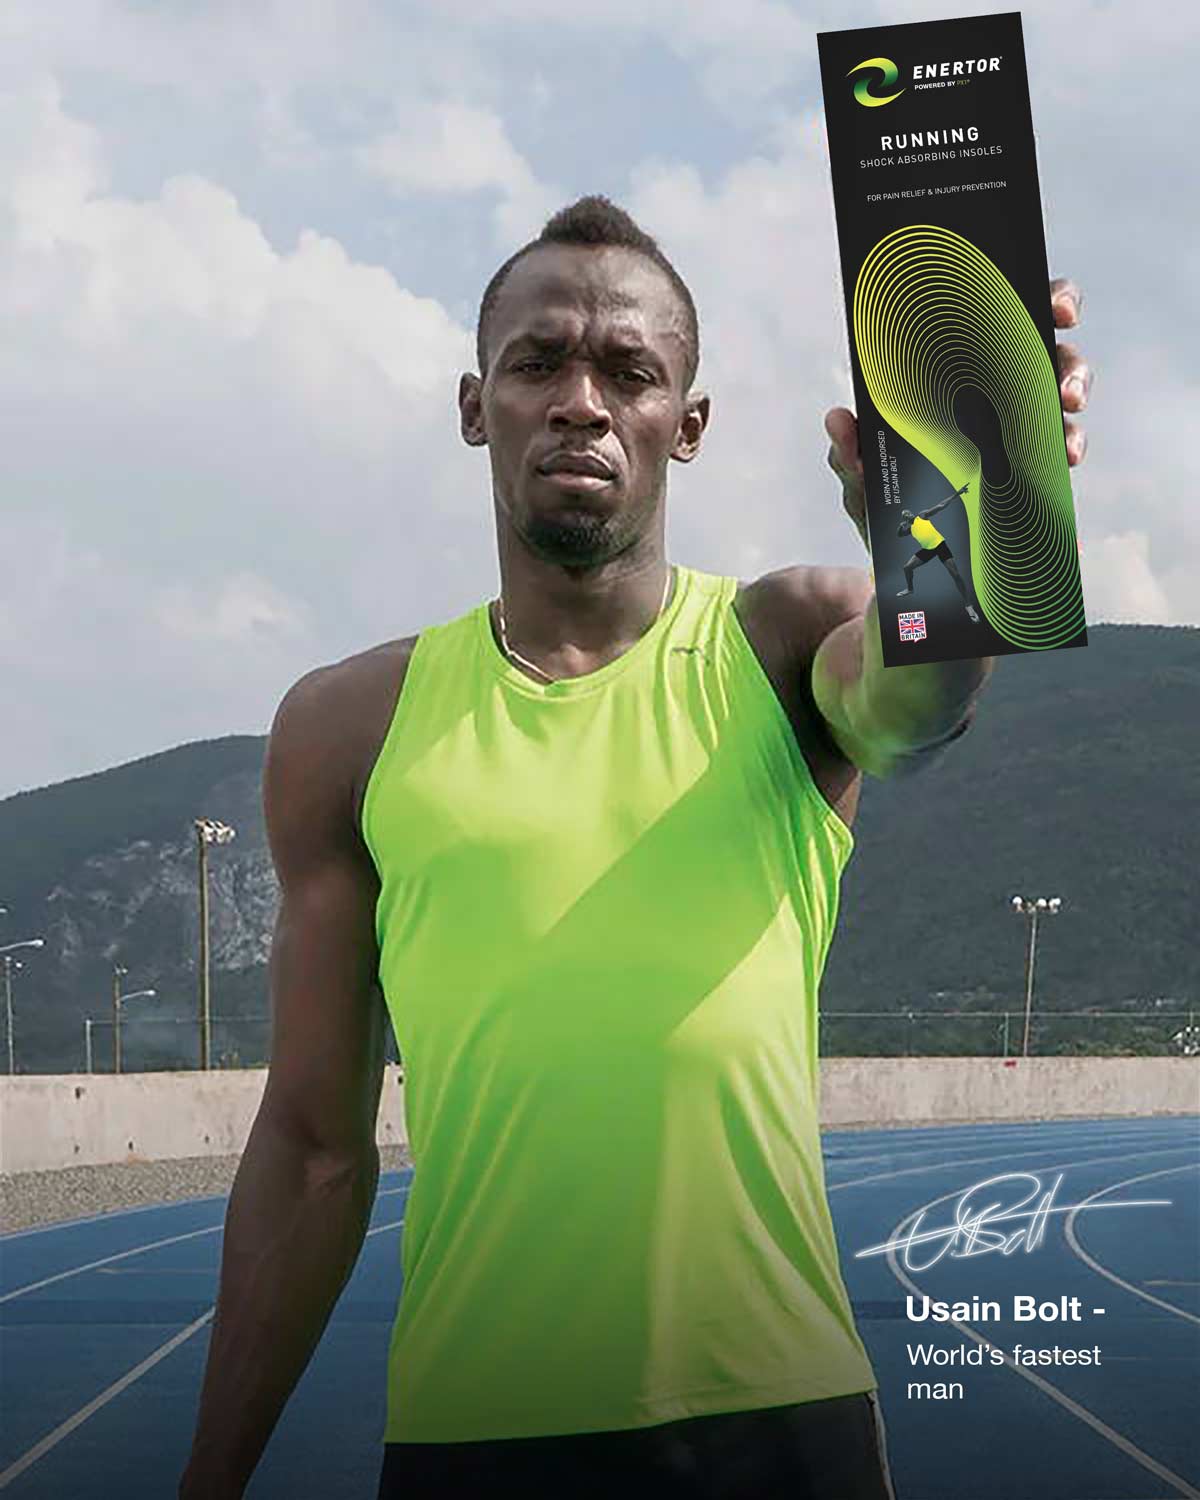 Usain Bolt holding Enertor Running Insoles